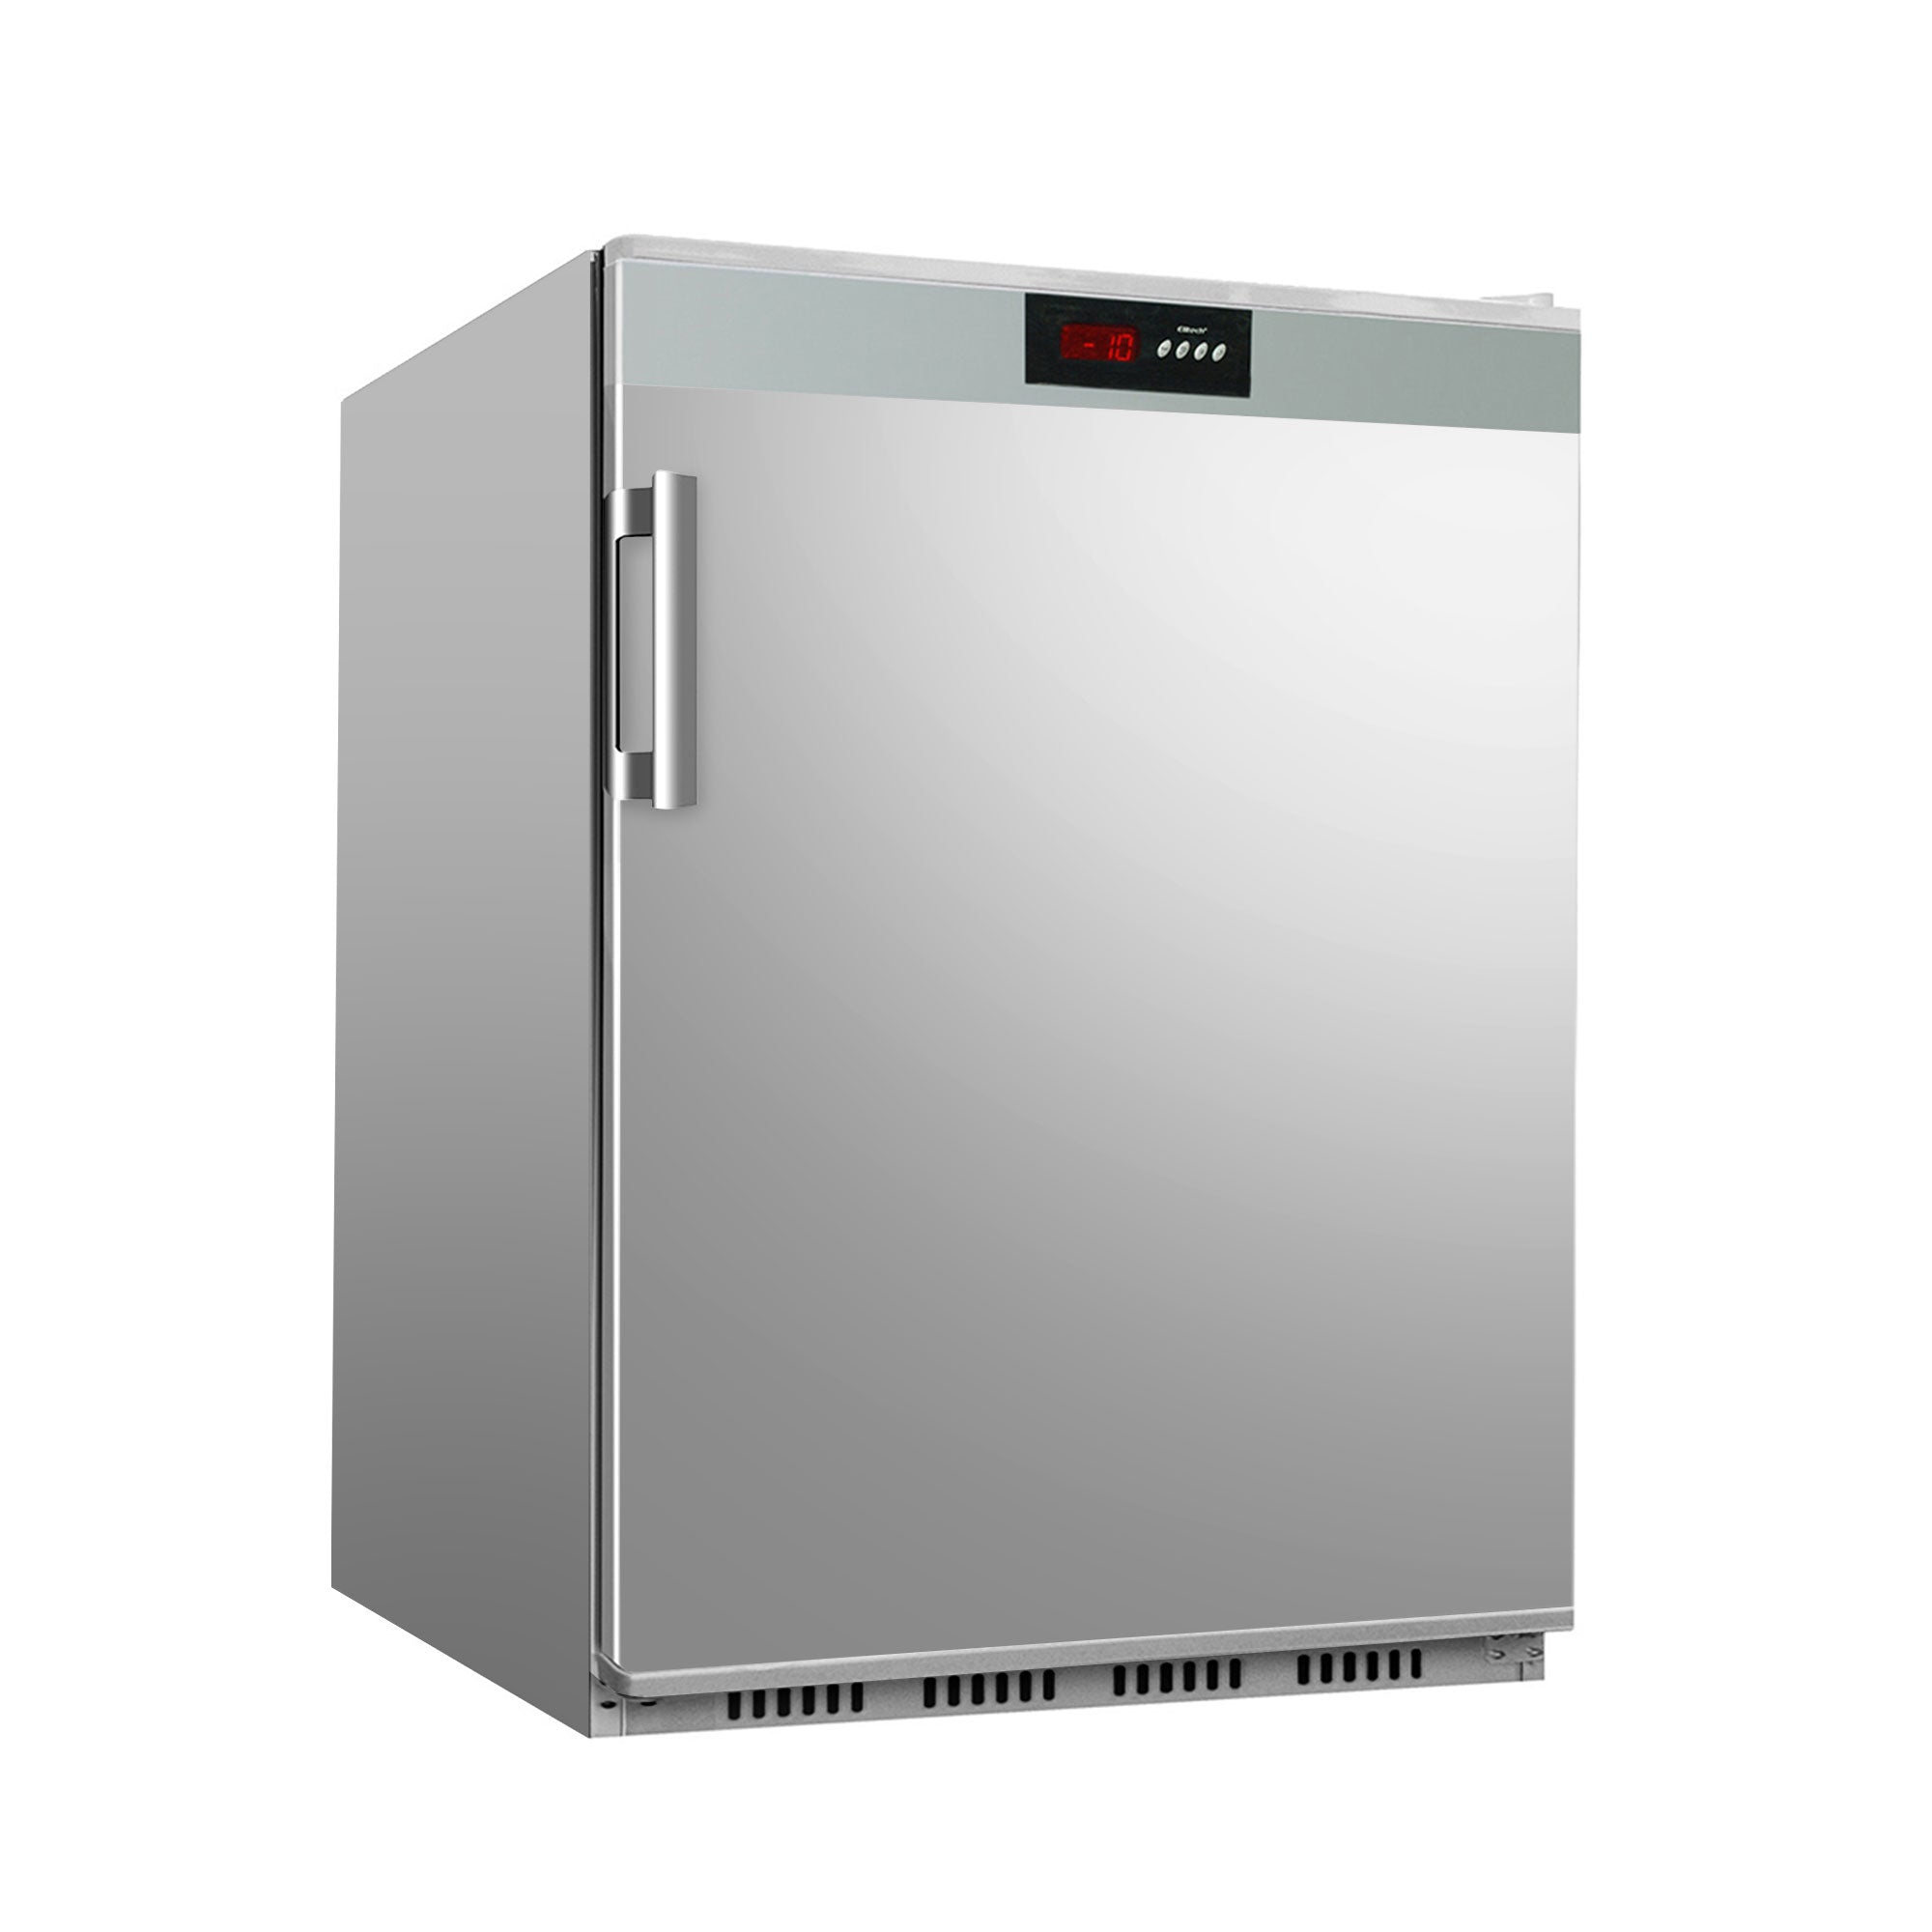 Refrigerator - 0.6 x 0.6 m - 130 liters - with 1 door